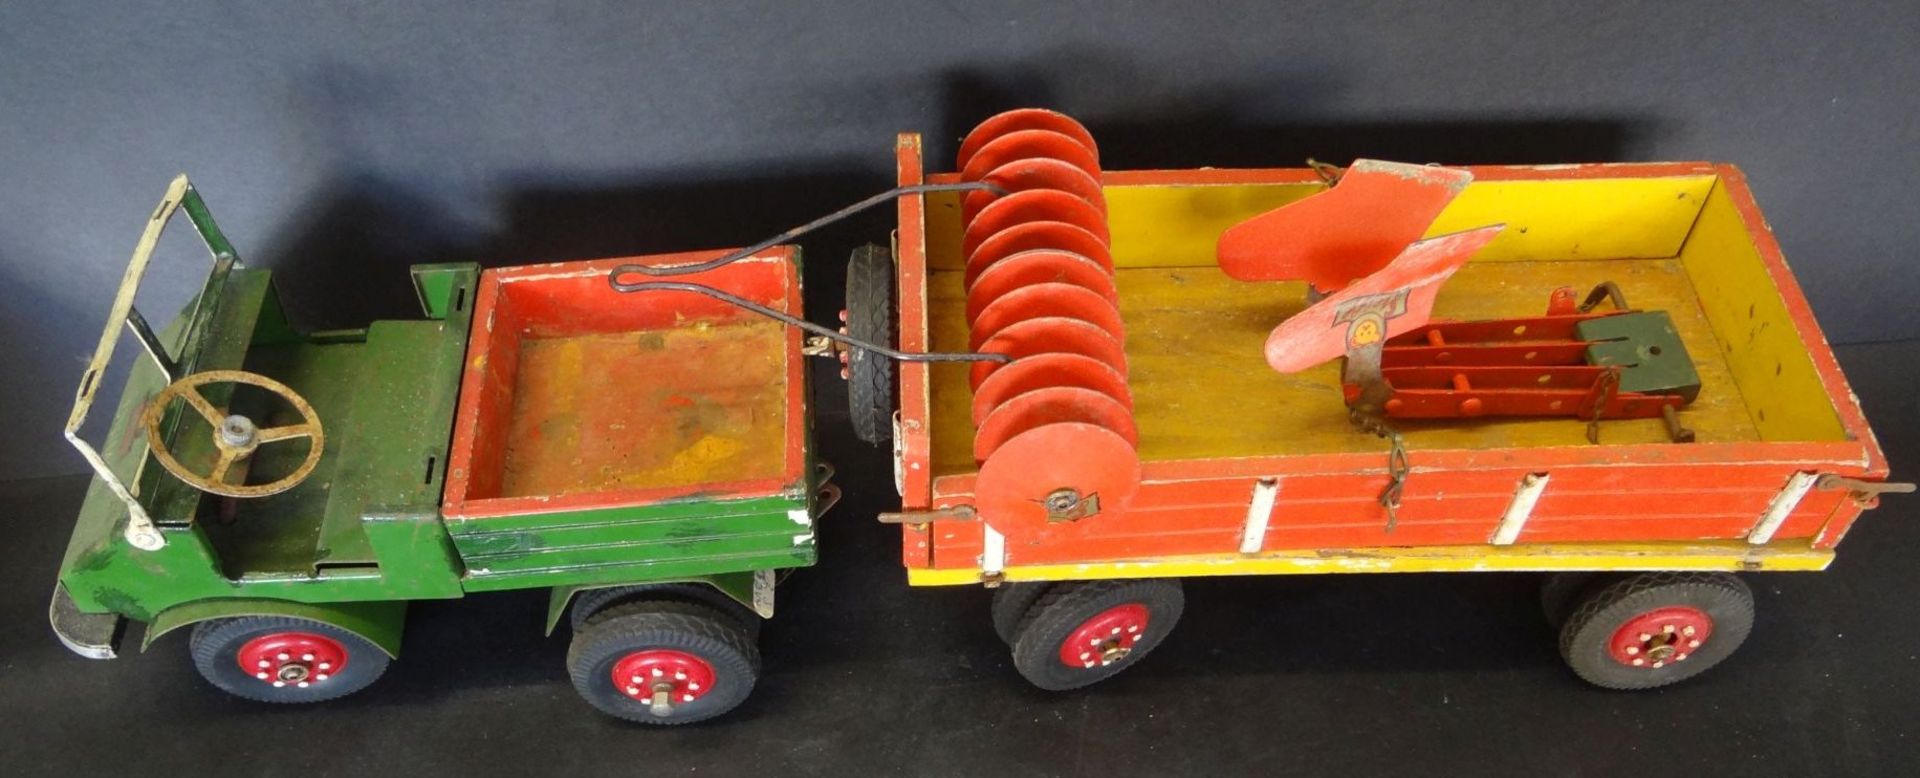 Steiff Unimog mit Anhänger, Holz/Kunststoff, bespielte Erhaltun - Bild 3 aus 6